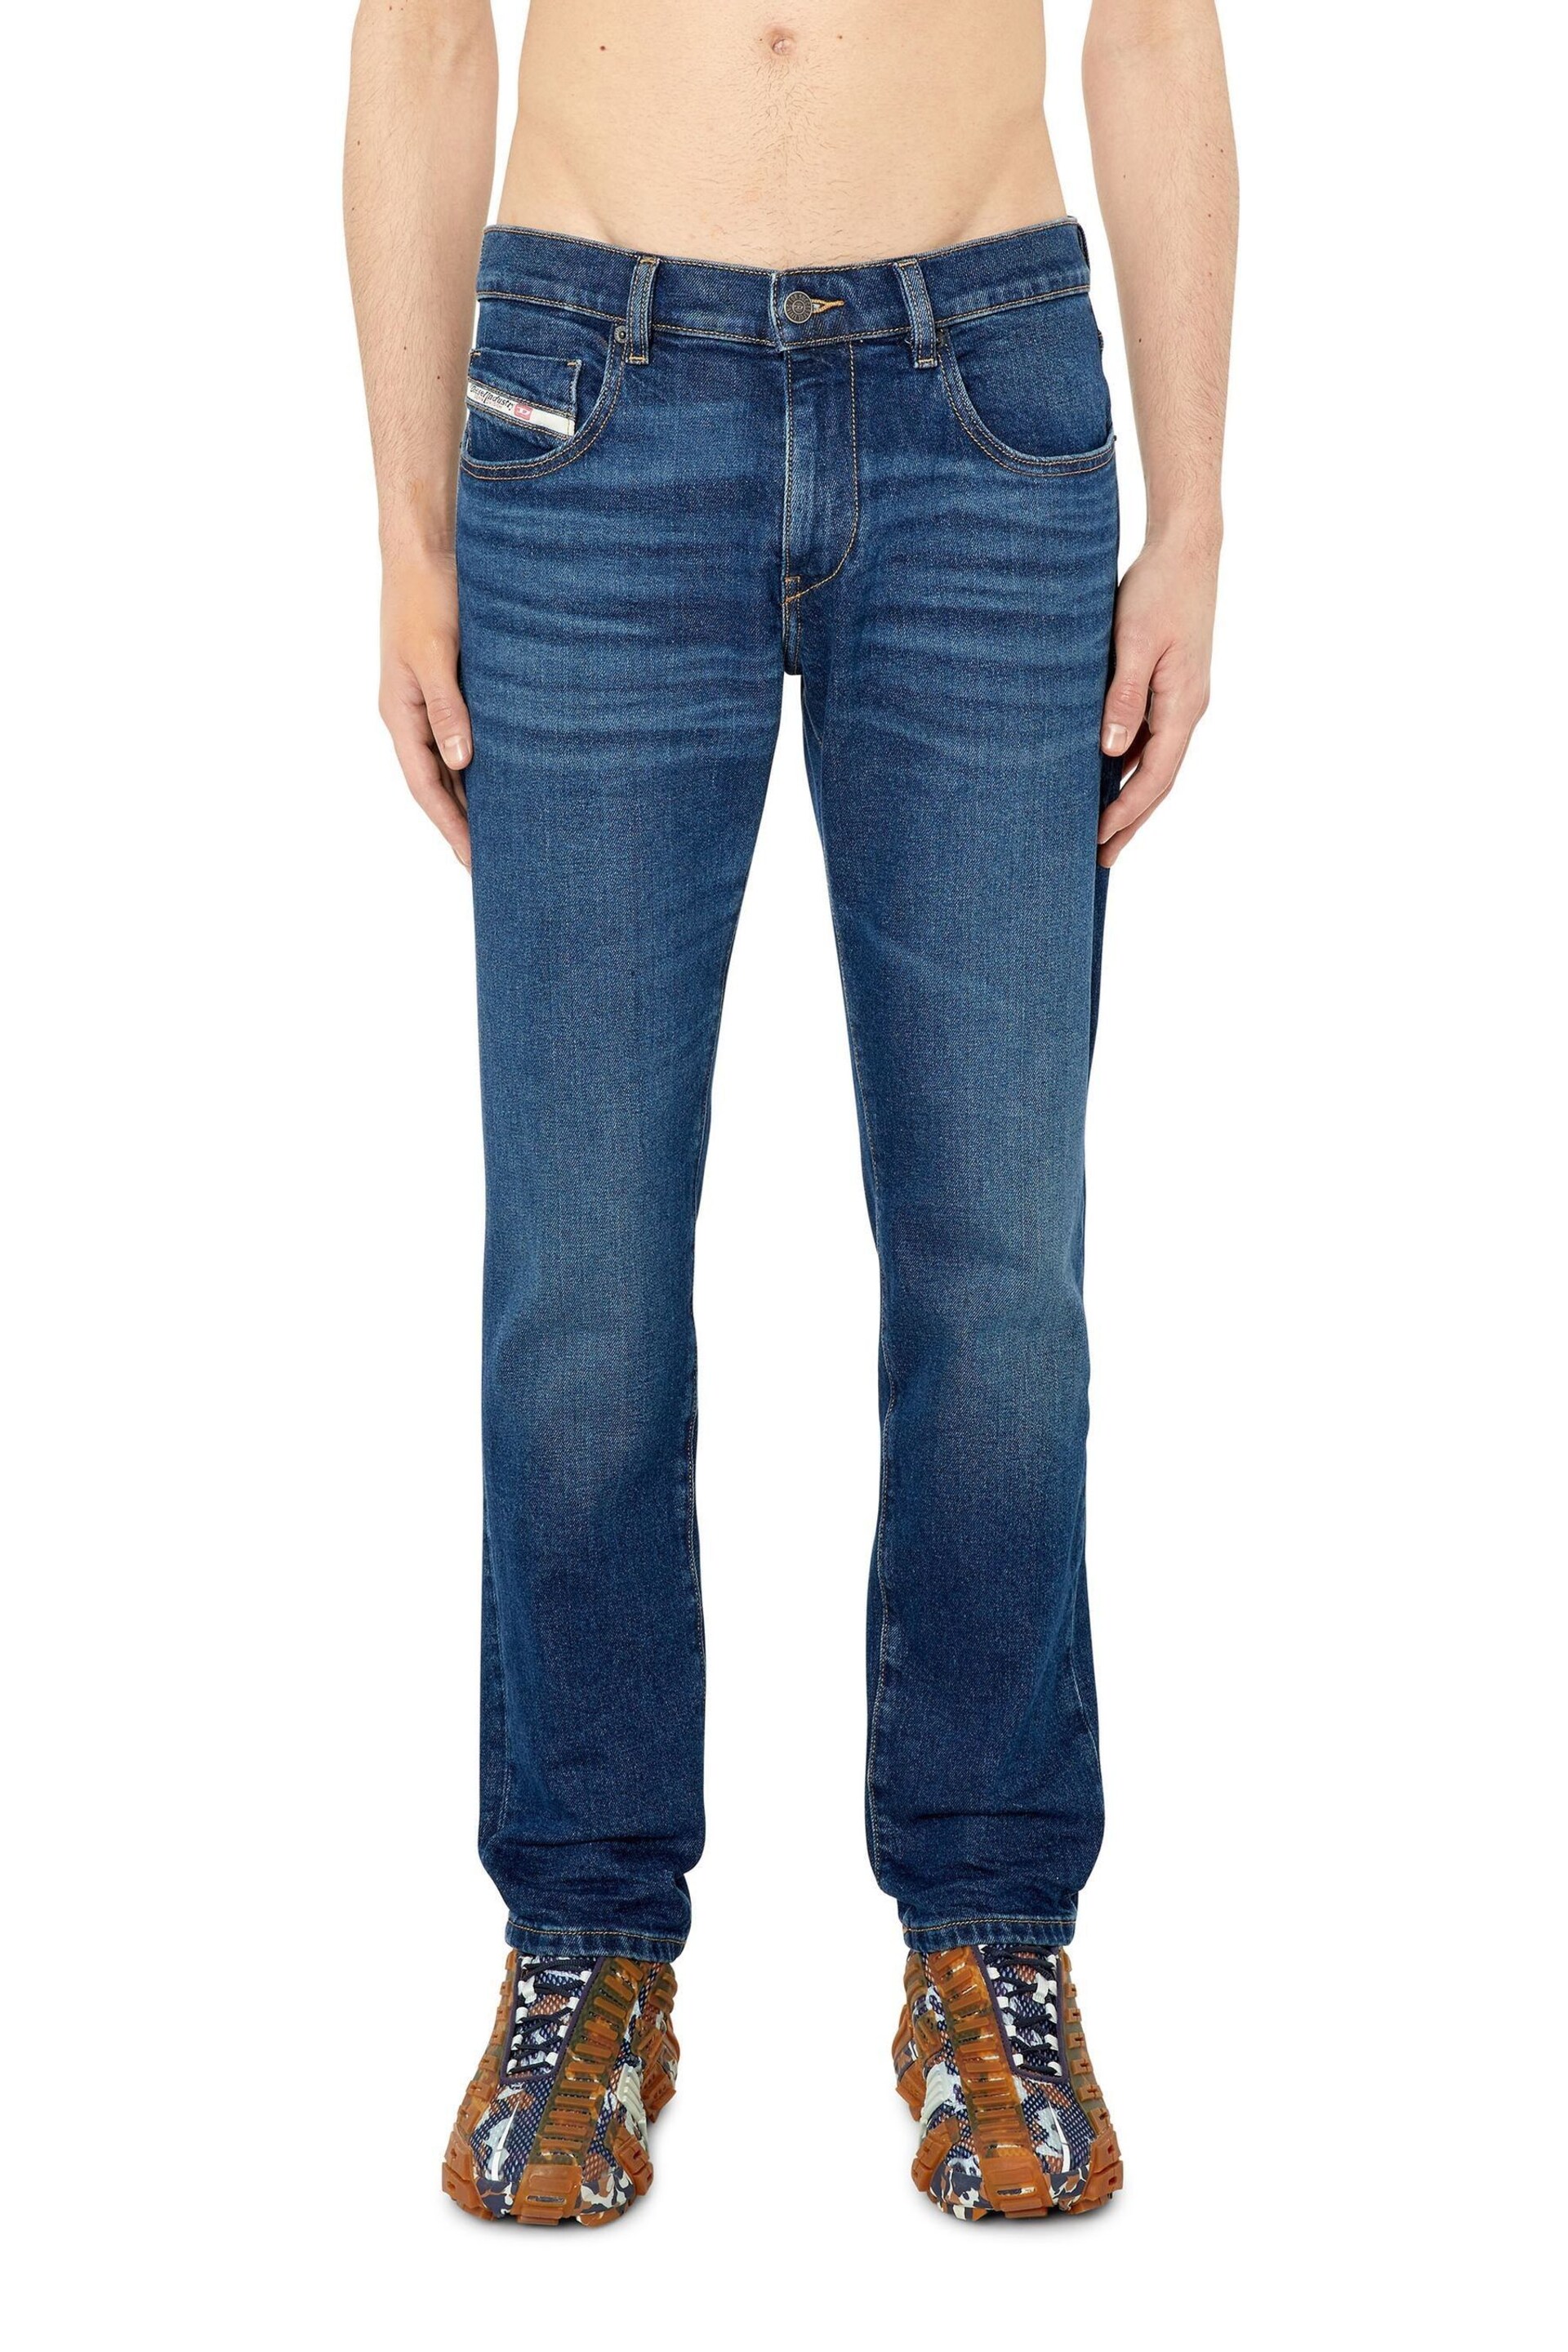 Diesel Slim Fit Mid Blue Denim D-Strukt Jeans - Image 1 of 5